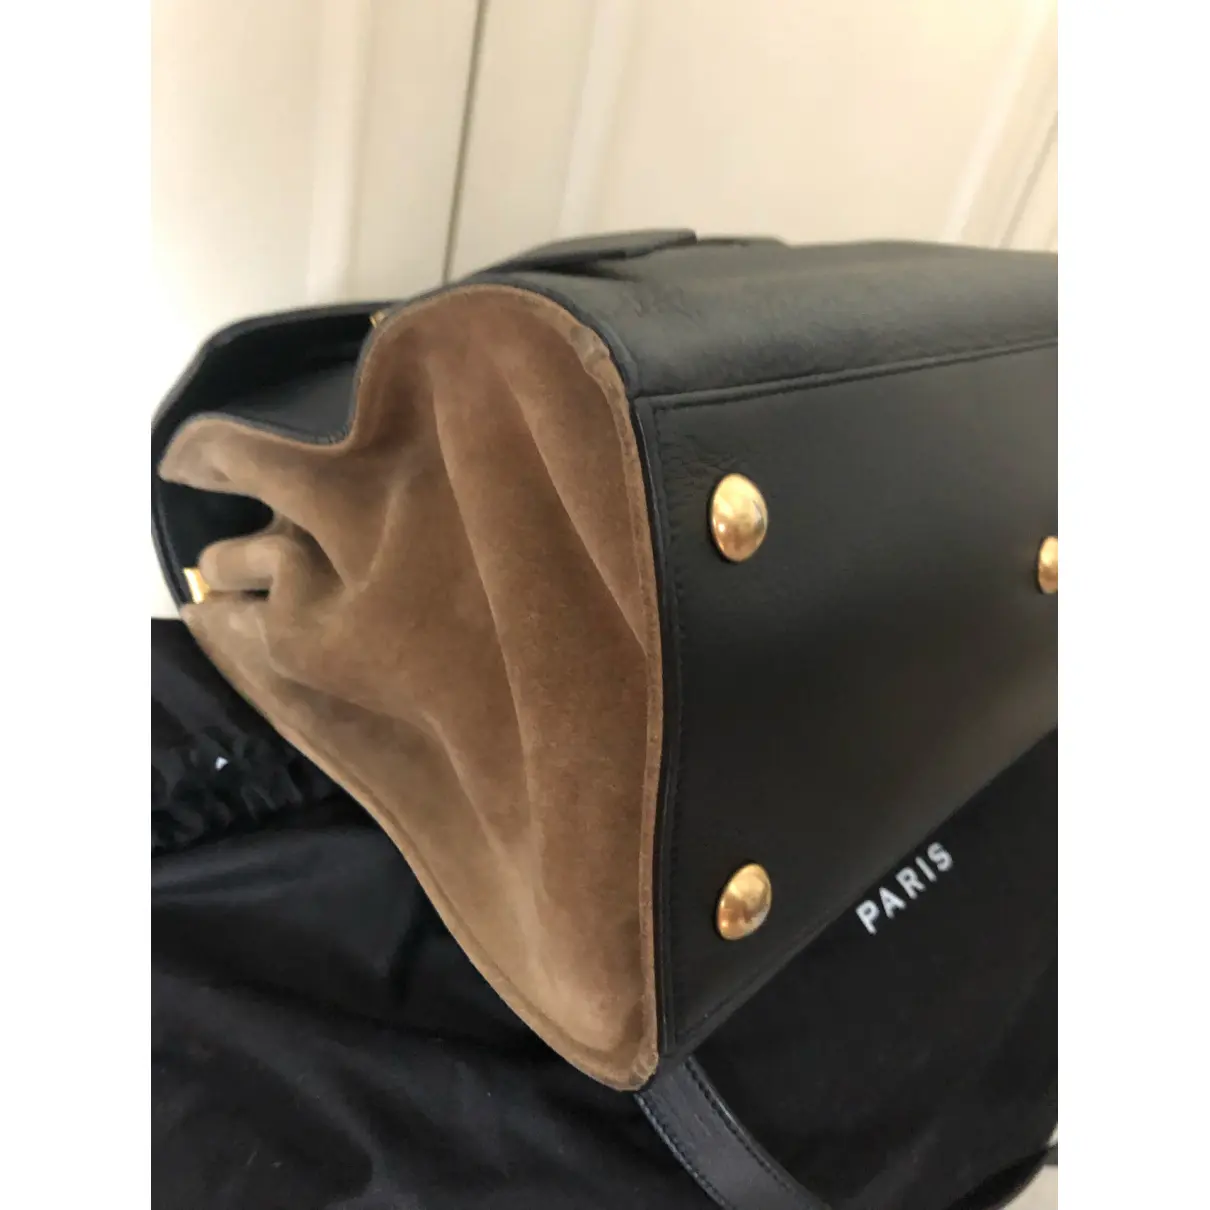 Muse II leather handbag Saint Laurent